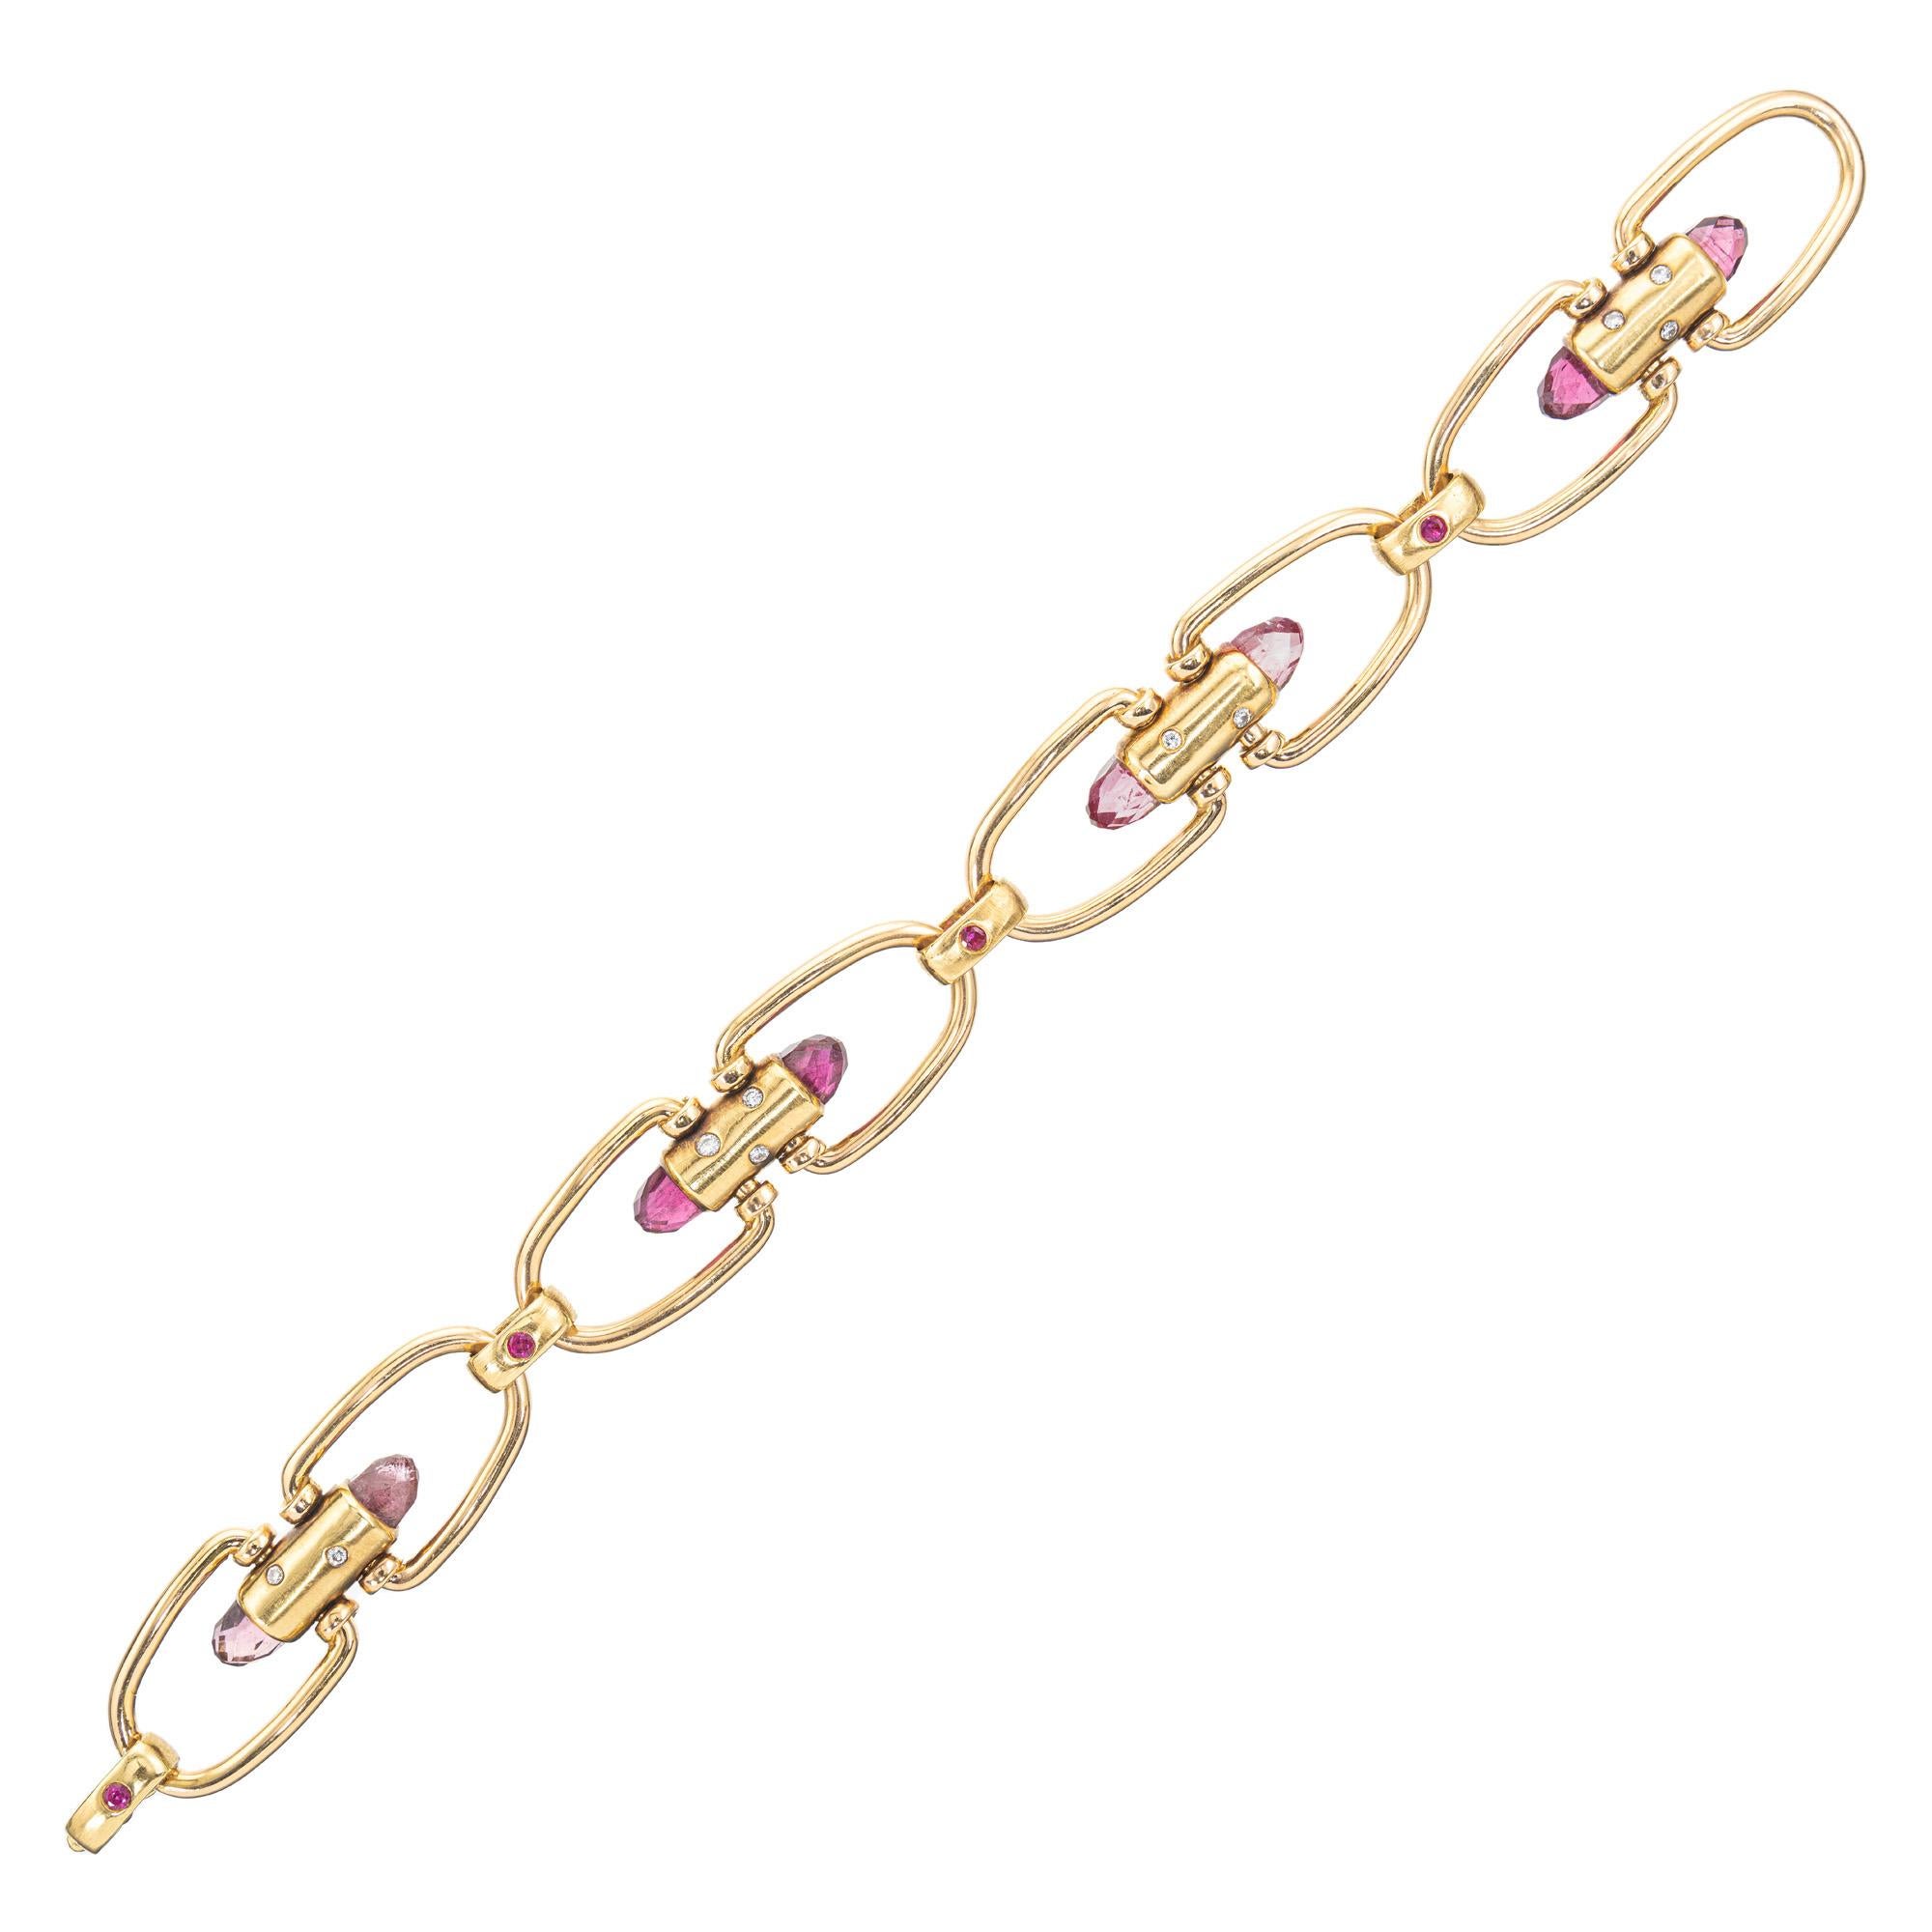 Rosafarbenes Briolette Turmalin-Rubin-Diamant-Gliederarmband aus Roségold, ein wirklich exquisites Stück. Dieses Armband ist eine harmonische Mischung aus zarten rosafarbenen Turmalinen, Rubinen und runden Diamanten, die alle in glänzende Röhren und